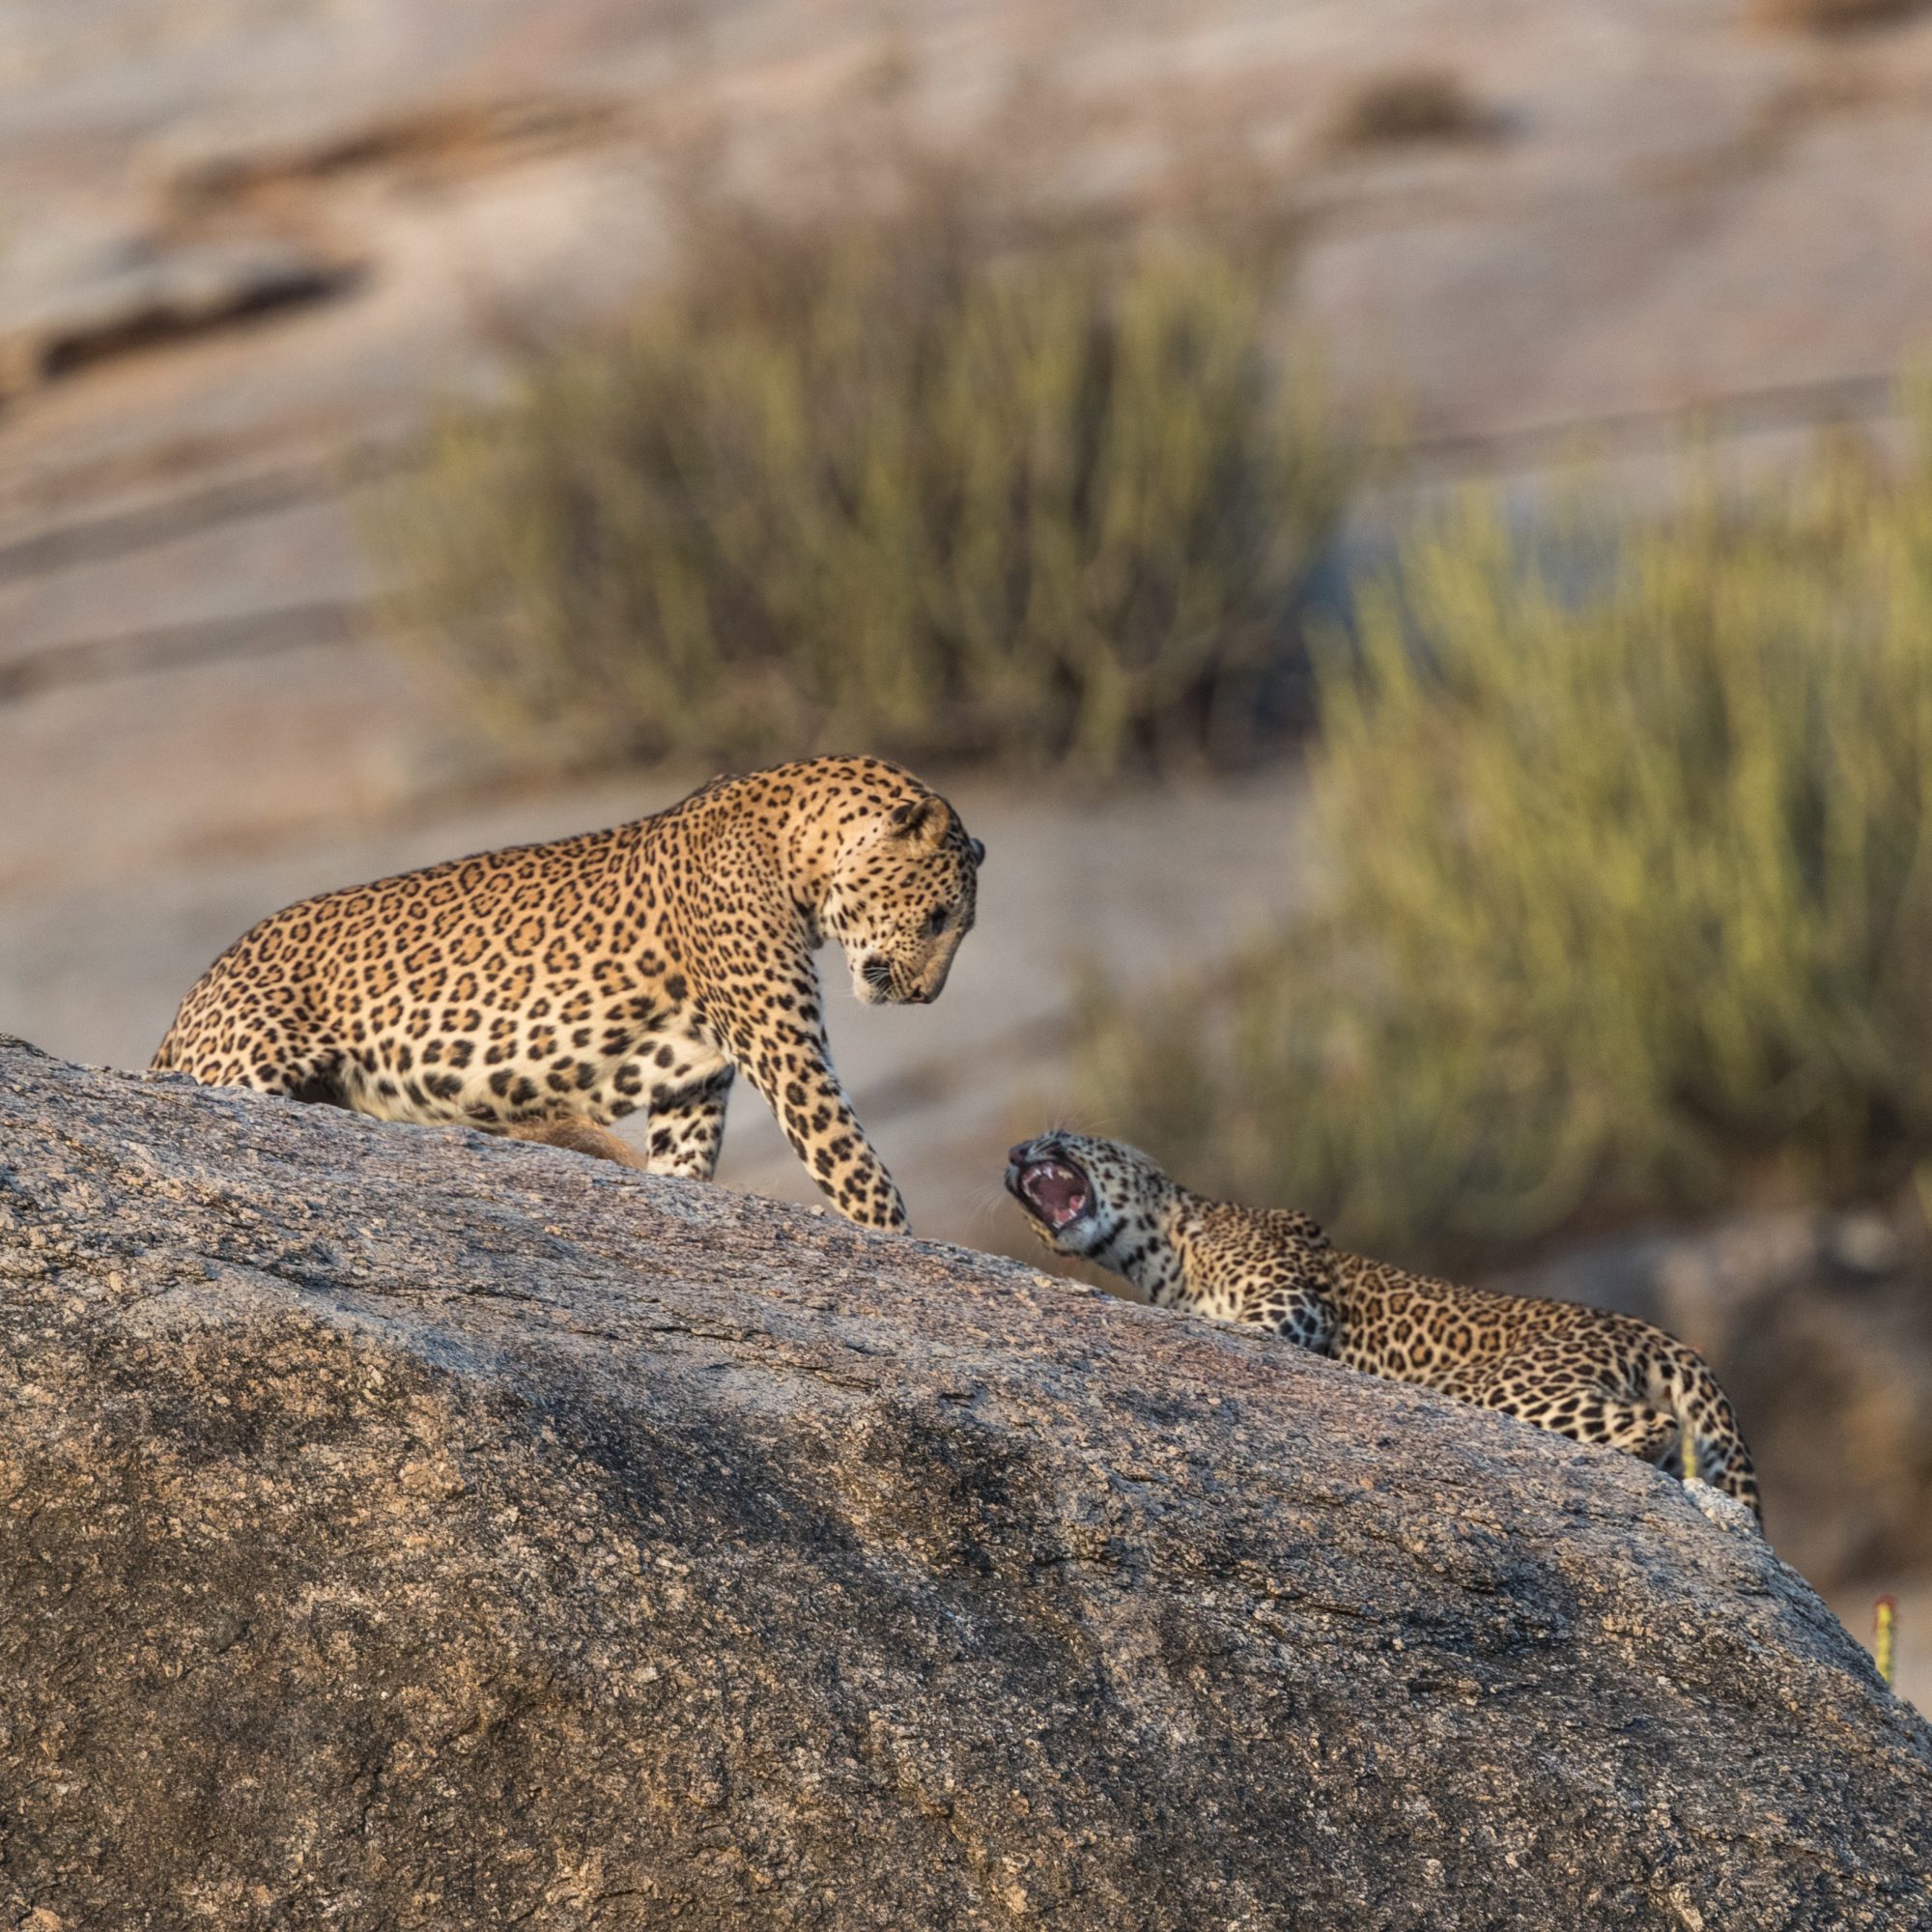 Rock climbing Leopards – Jawai, India 2017